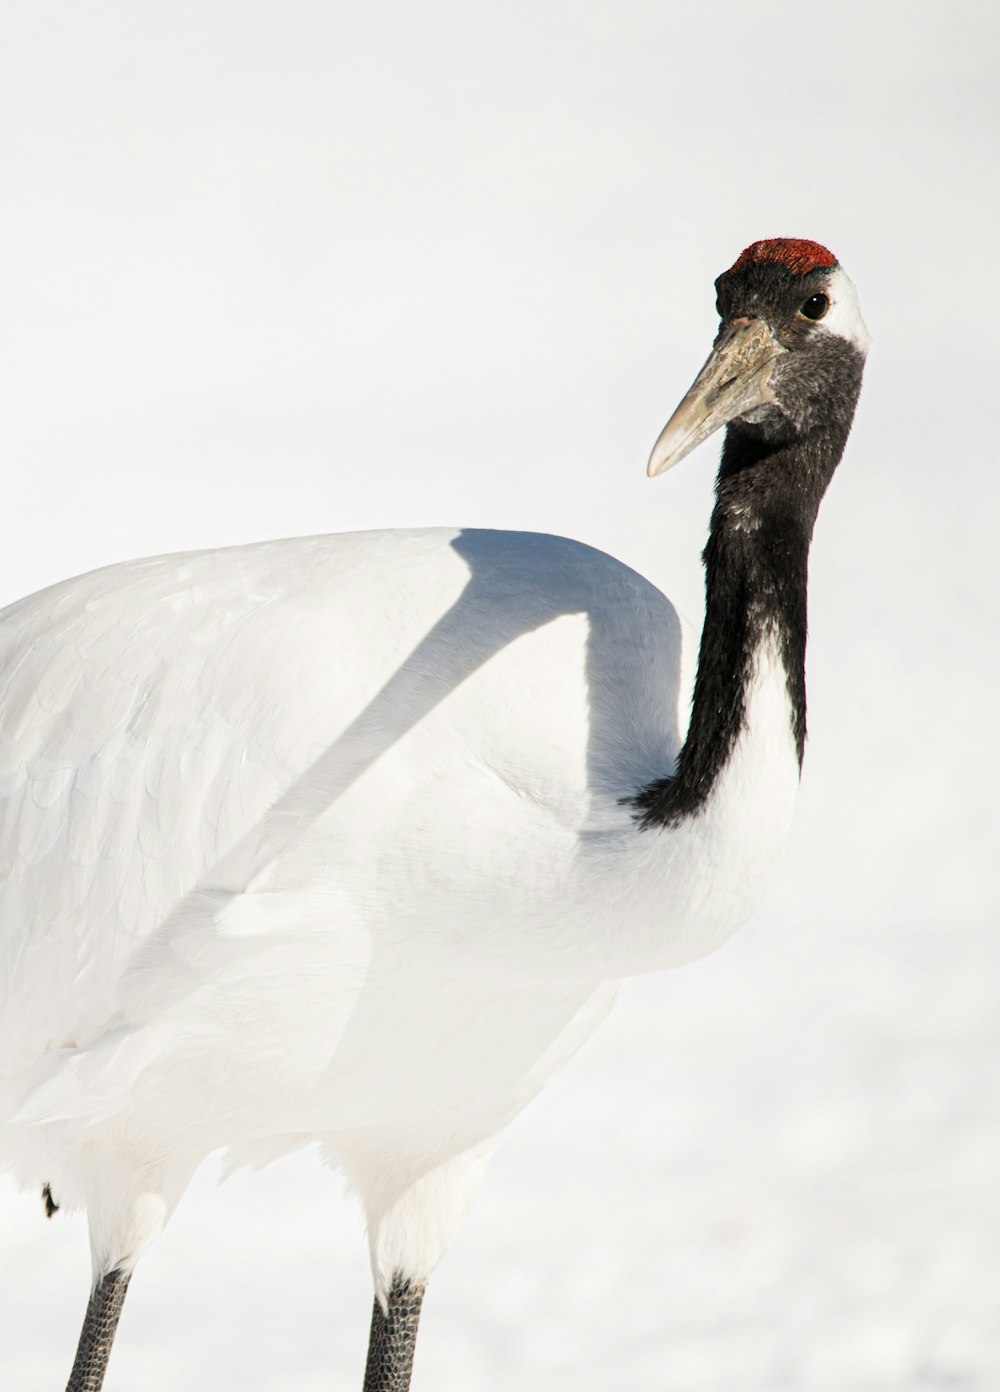 pássaro branco e preto no chão coberto de neve